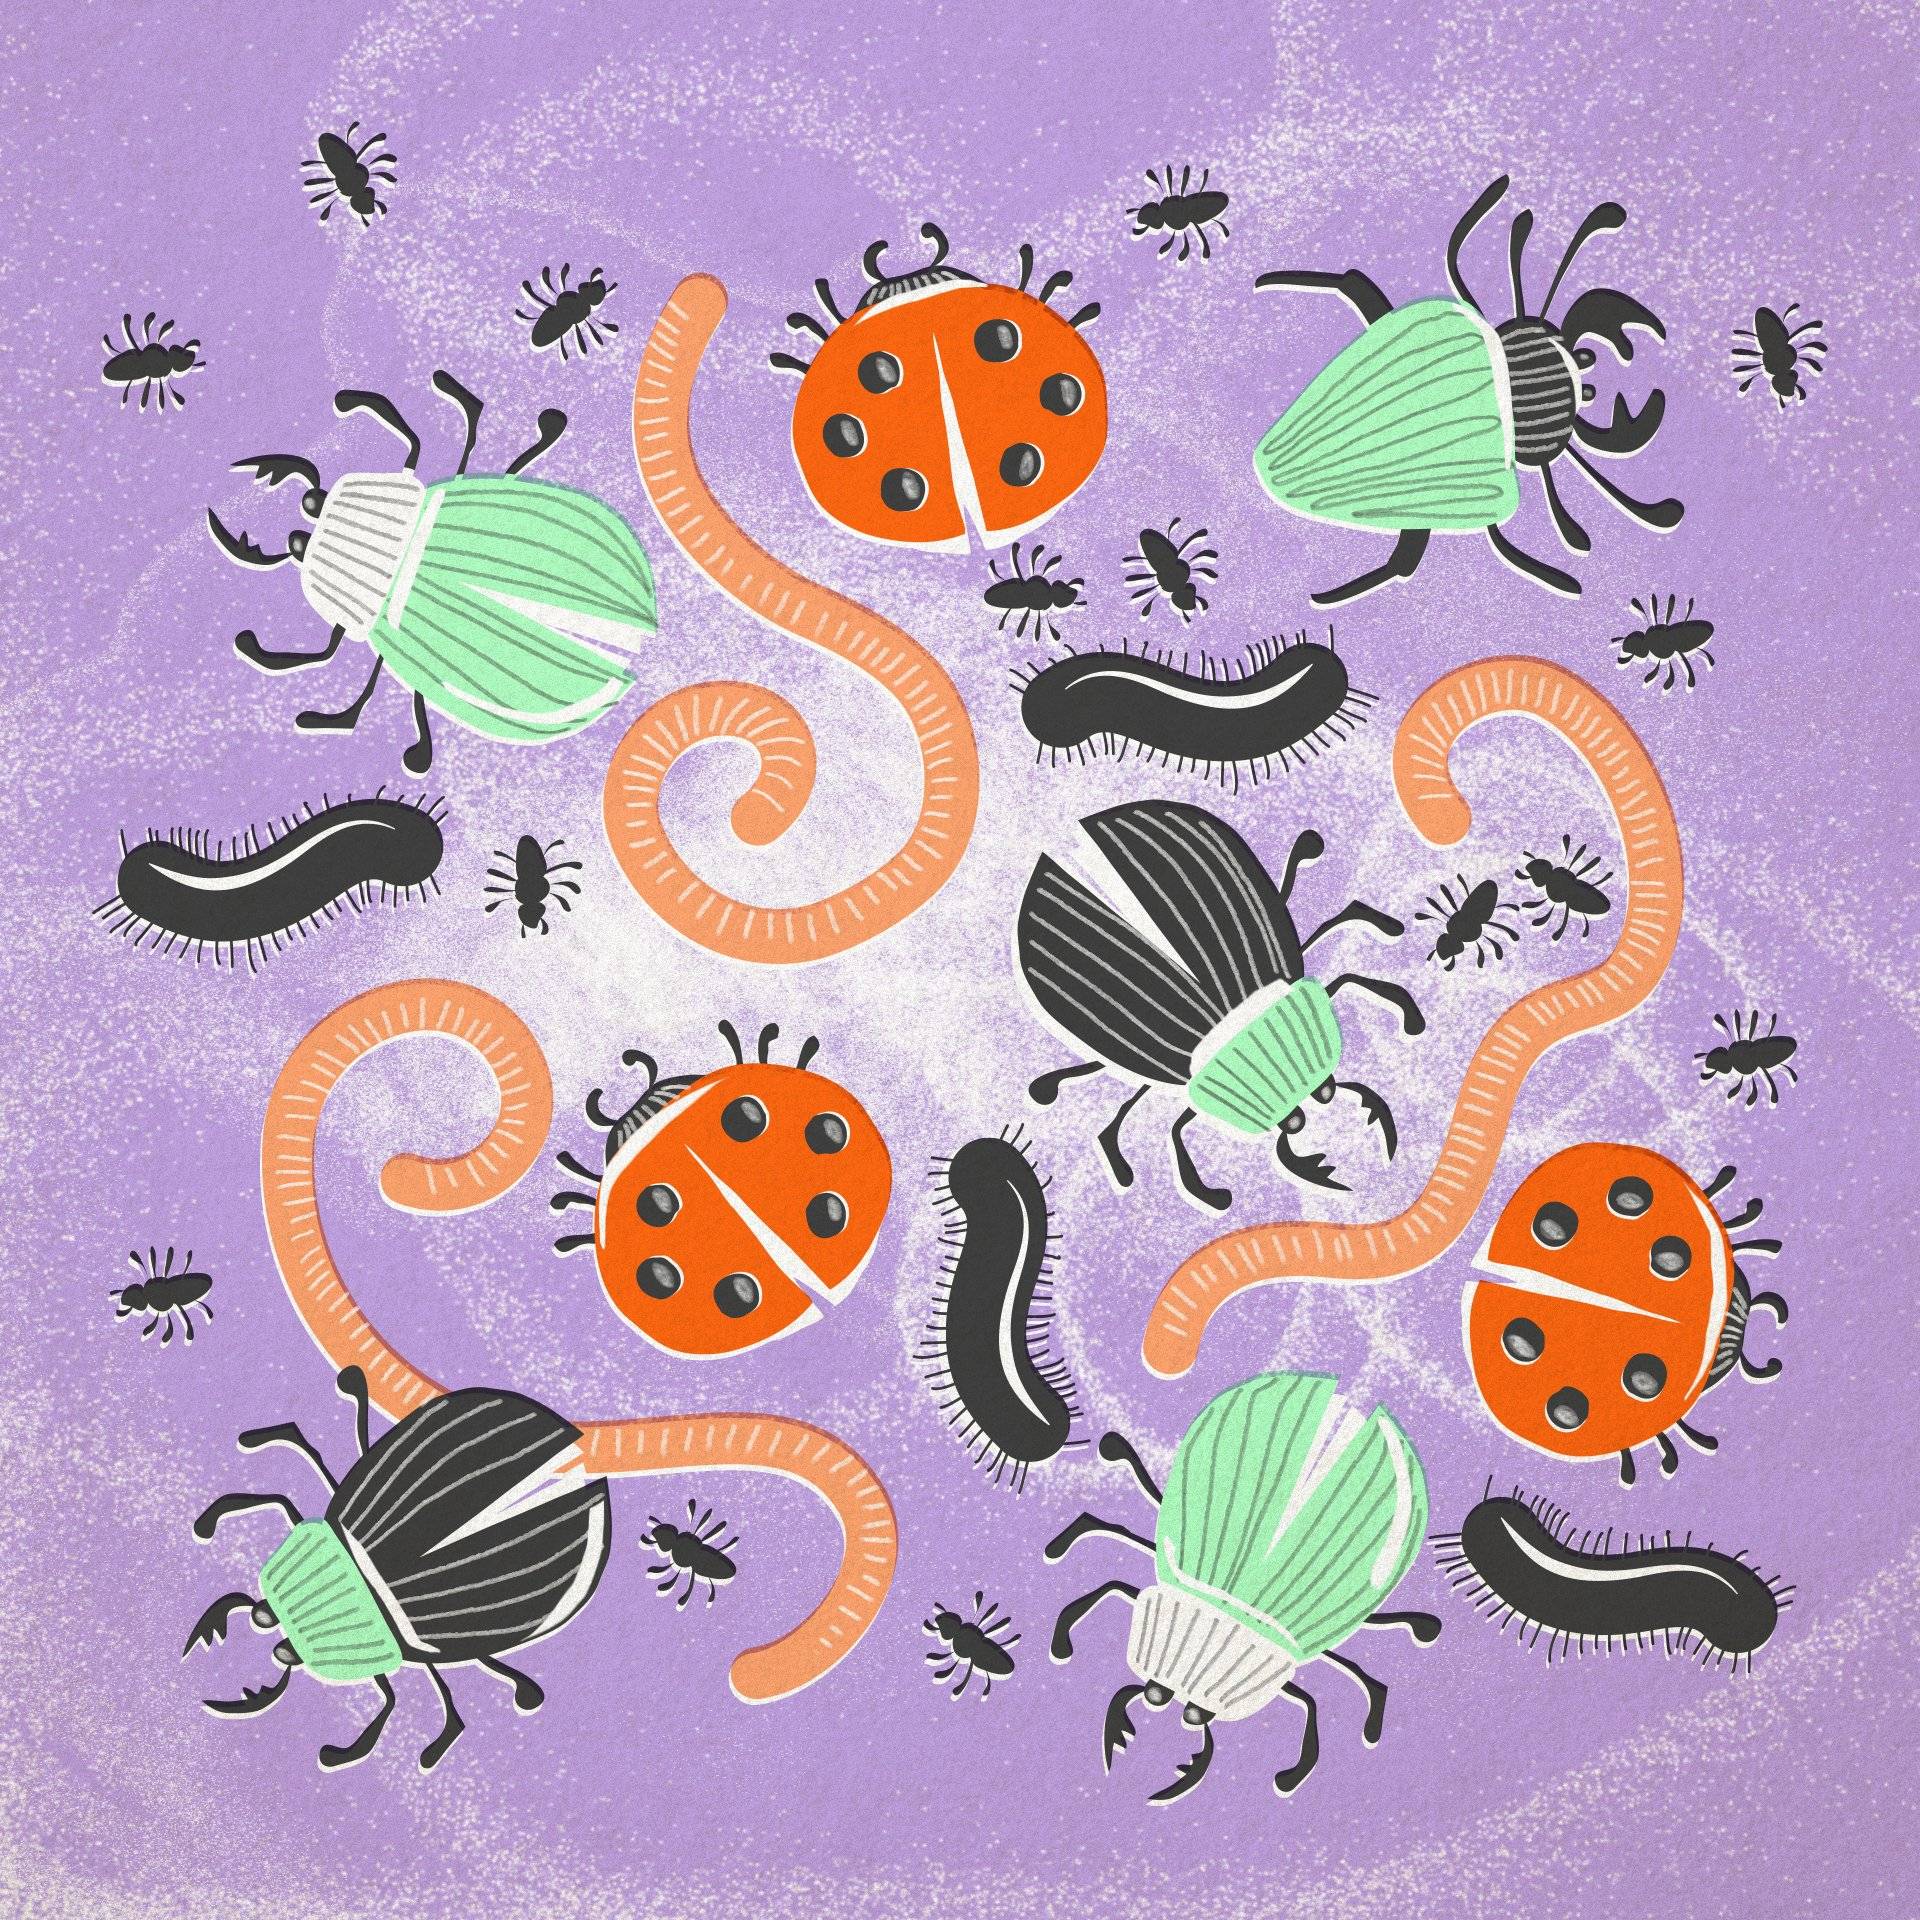 Ilustracja przedstawia różne kolorowe insekty i robaki